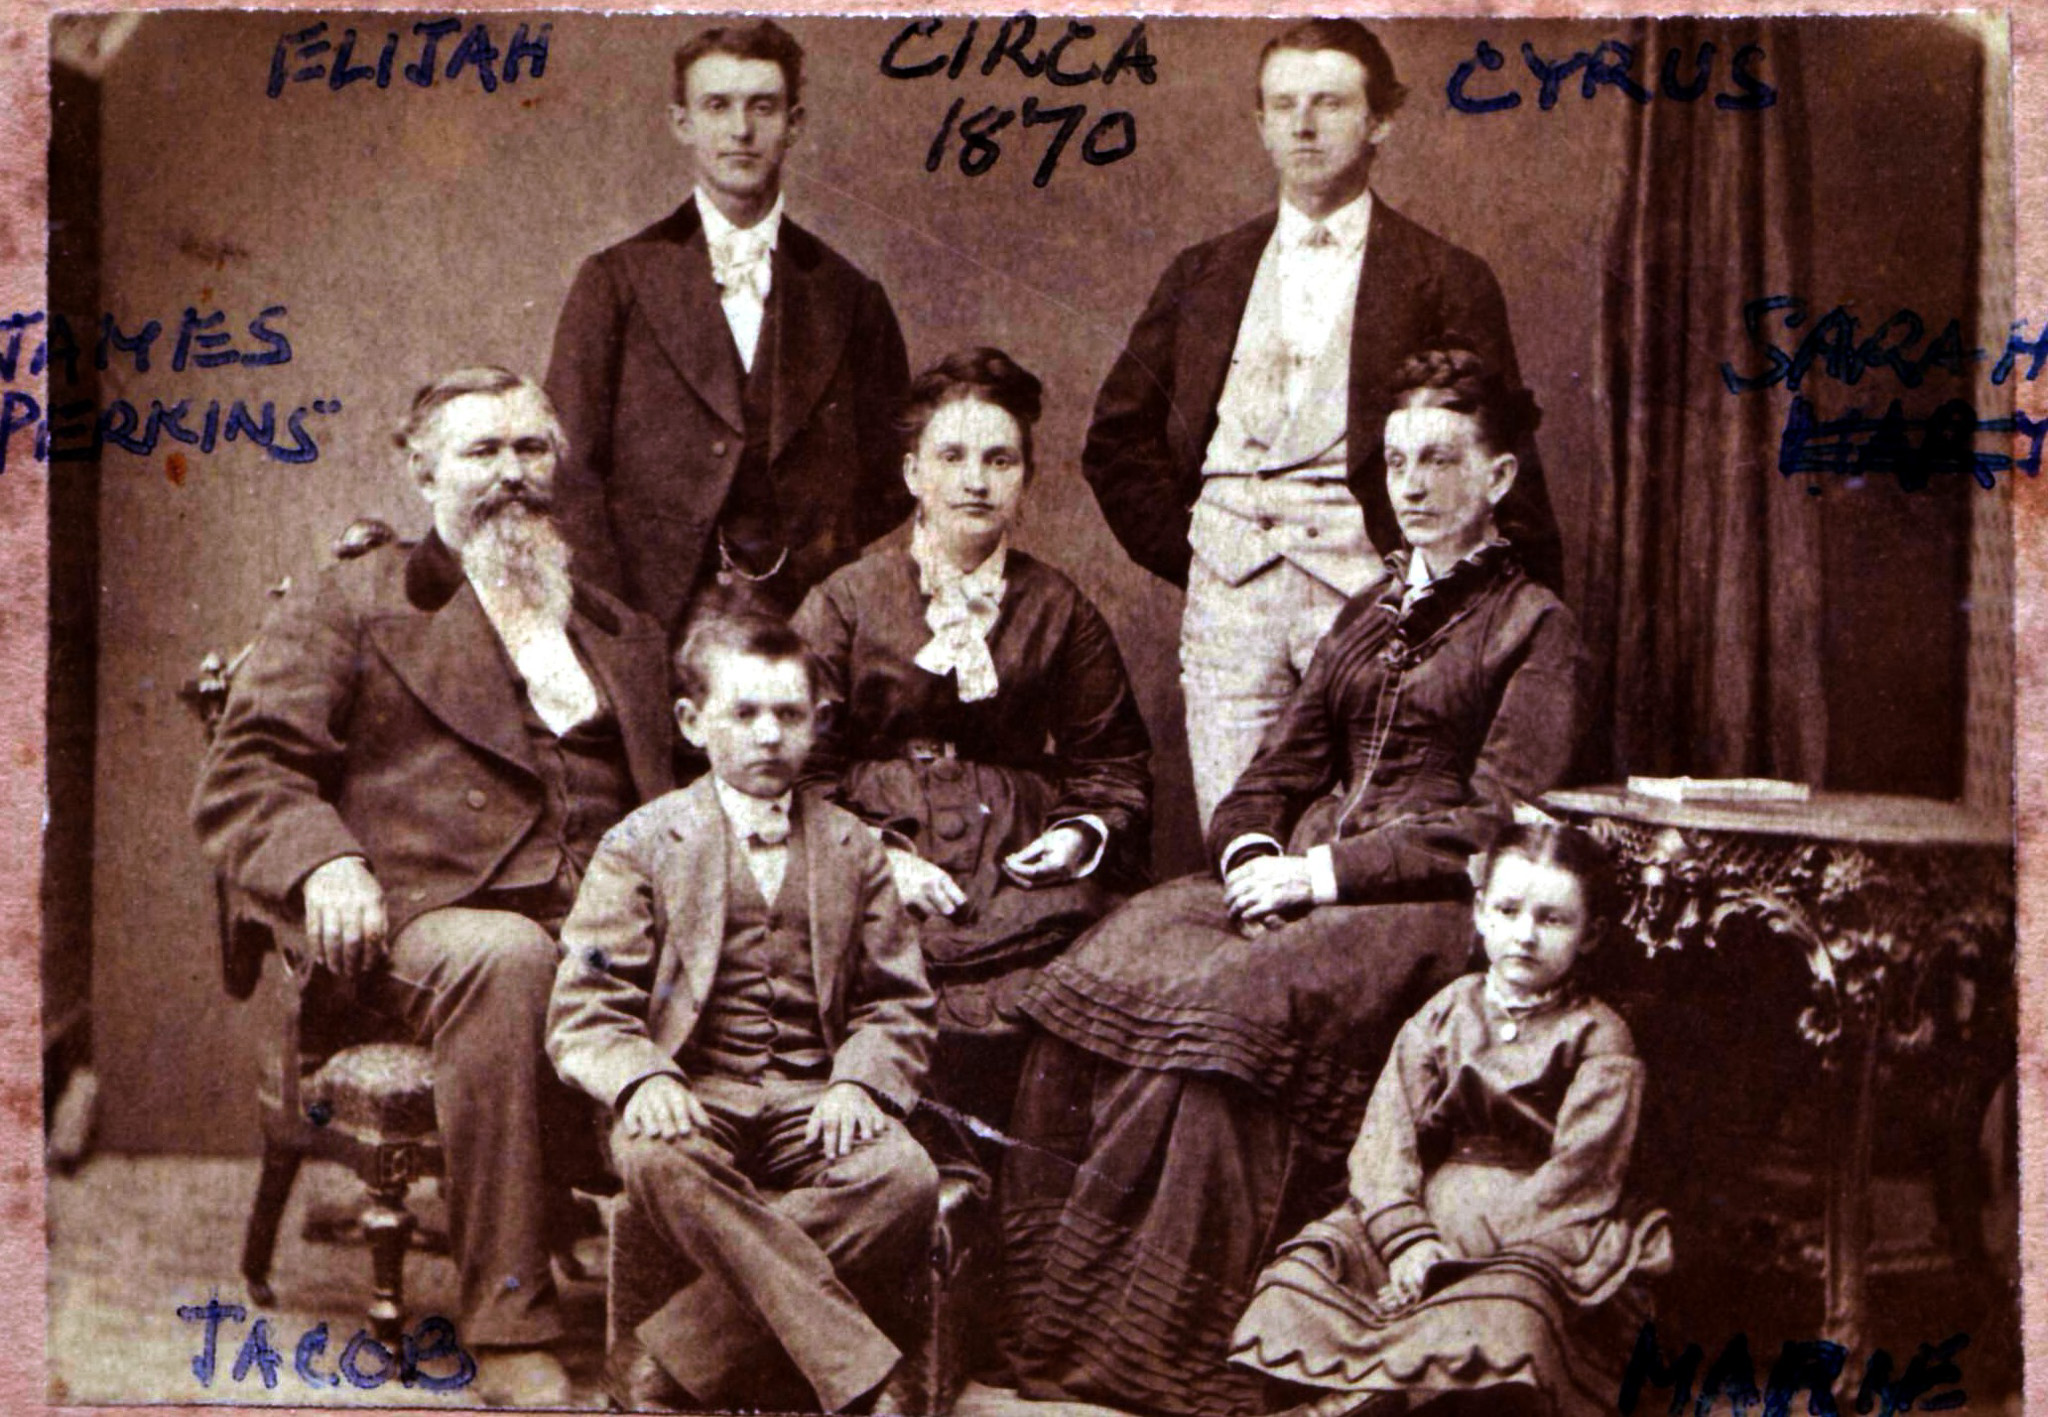 James & Mary Perkins Family Photo, circa 1872